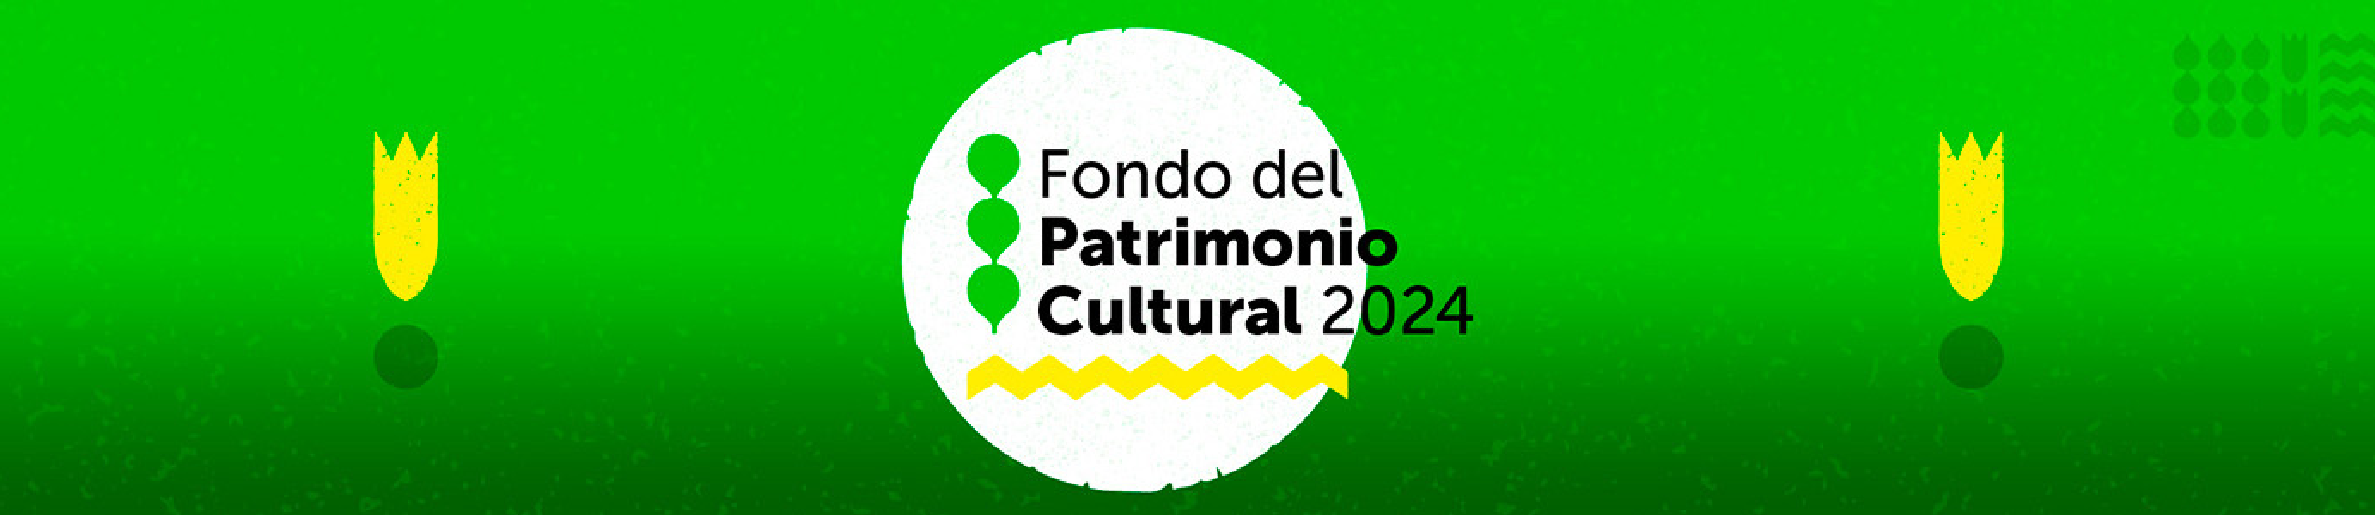 Fondo del Patrimonio Cultural 2024